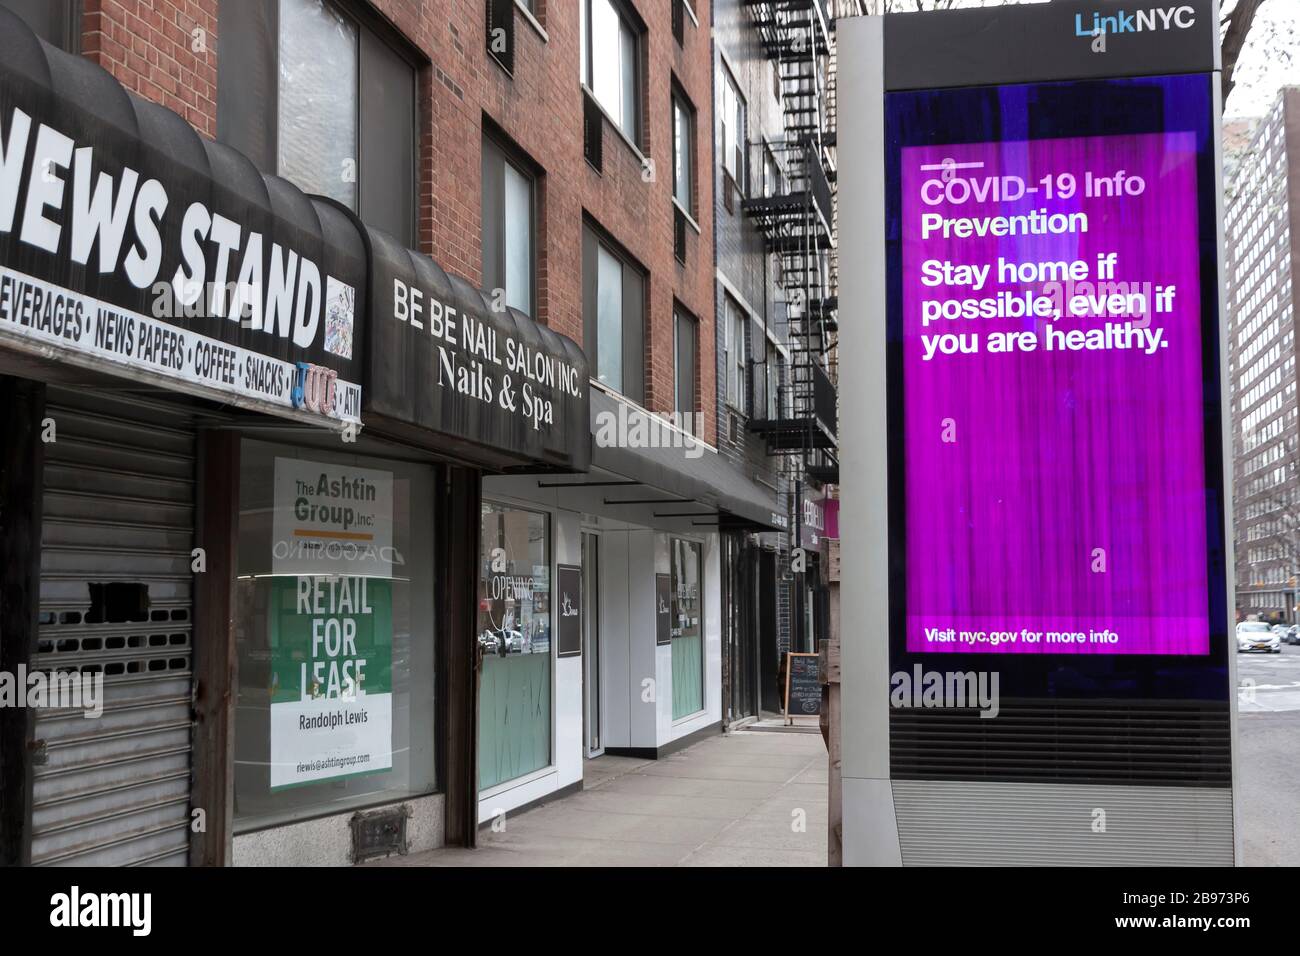 El kiosco digital de LinkNYC muestra mensajes de Covid-19 (coronavirus) y consejos sobre cuarentena a los neoyorquinos. Foto de stock